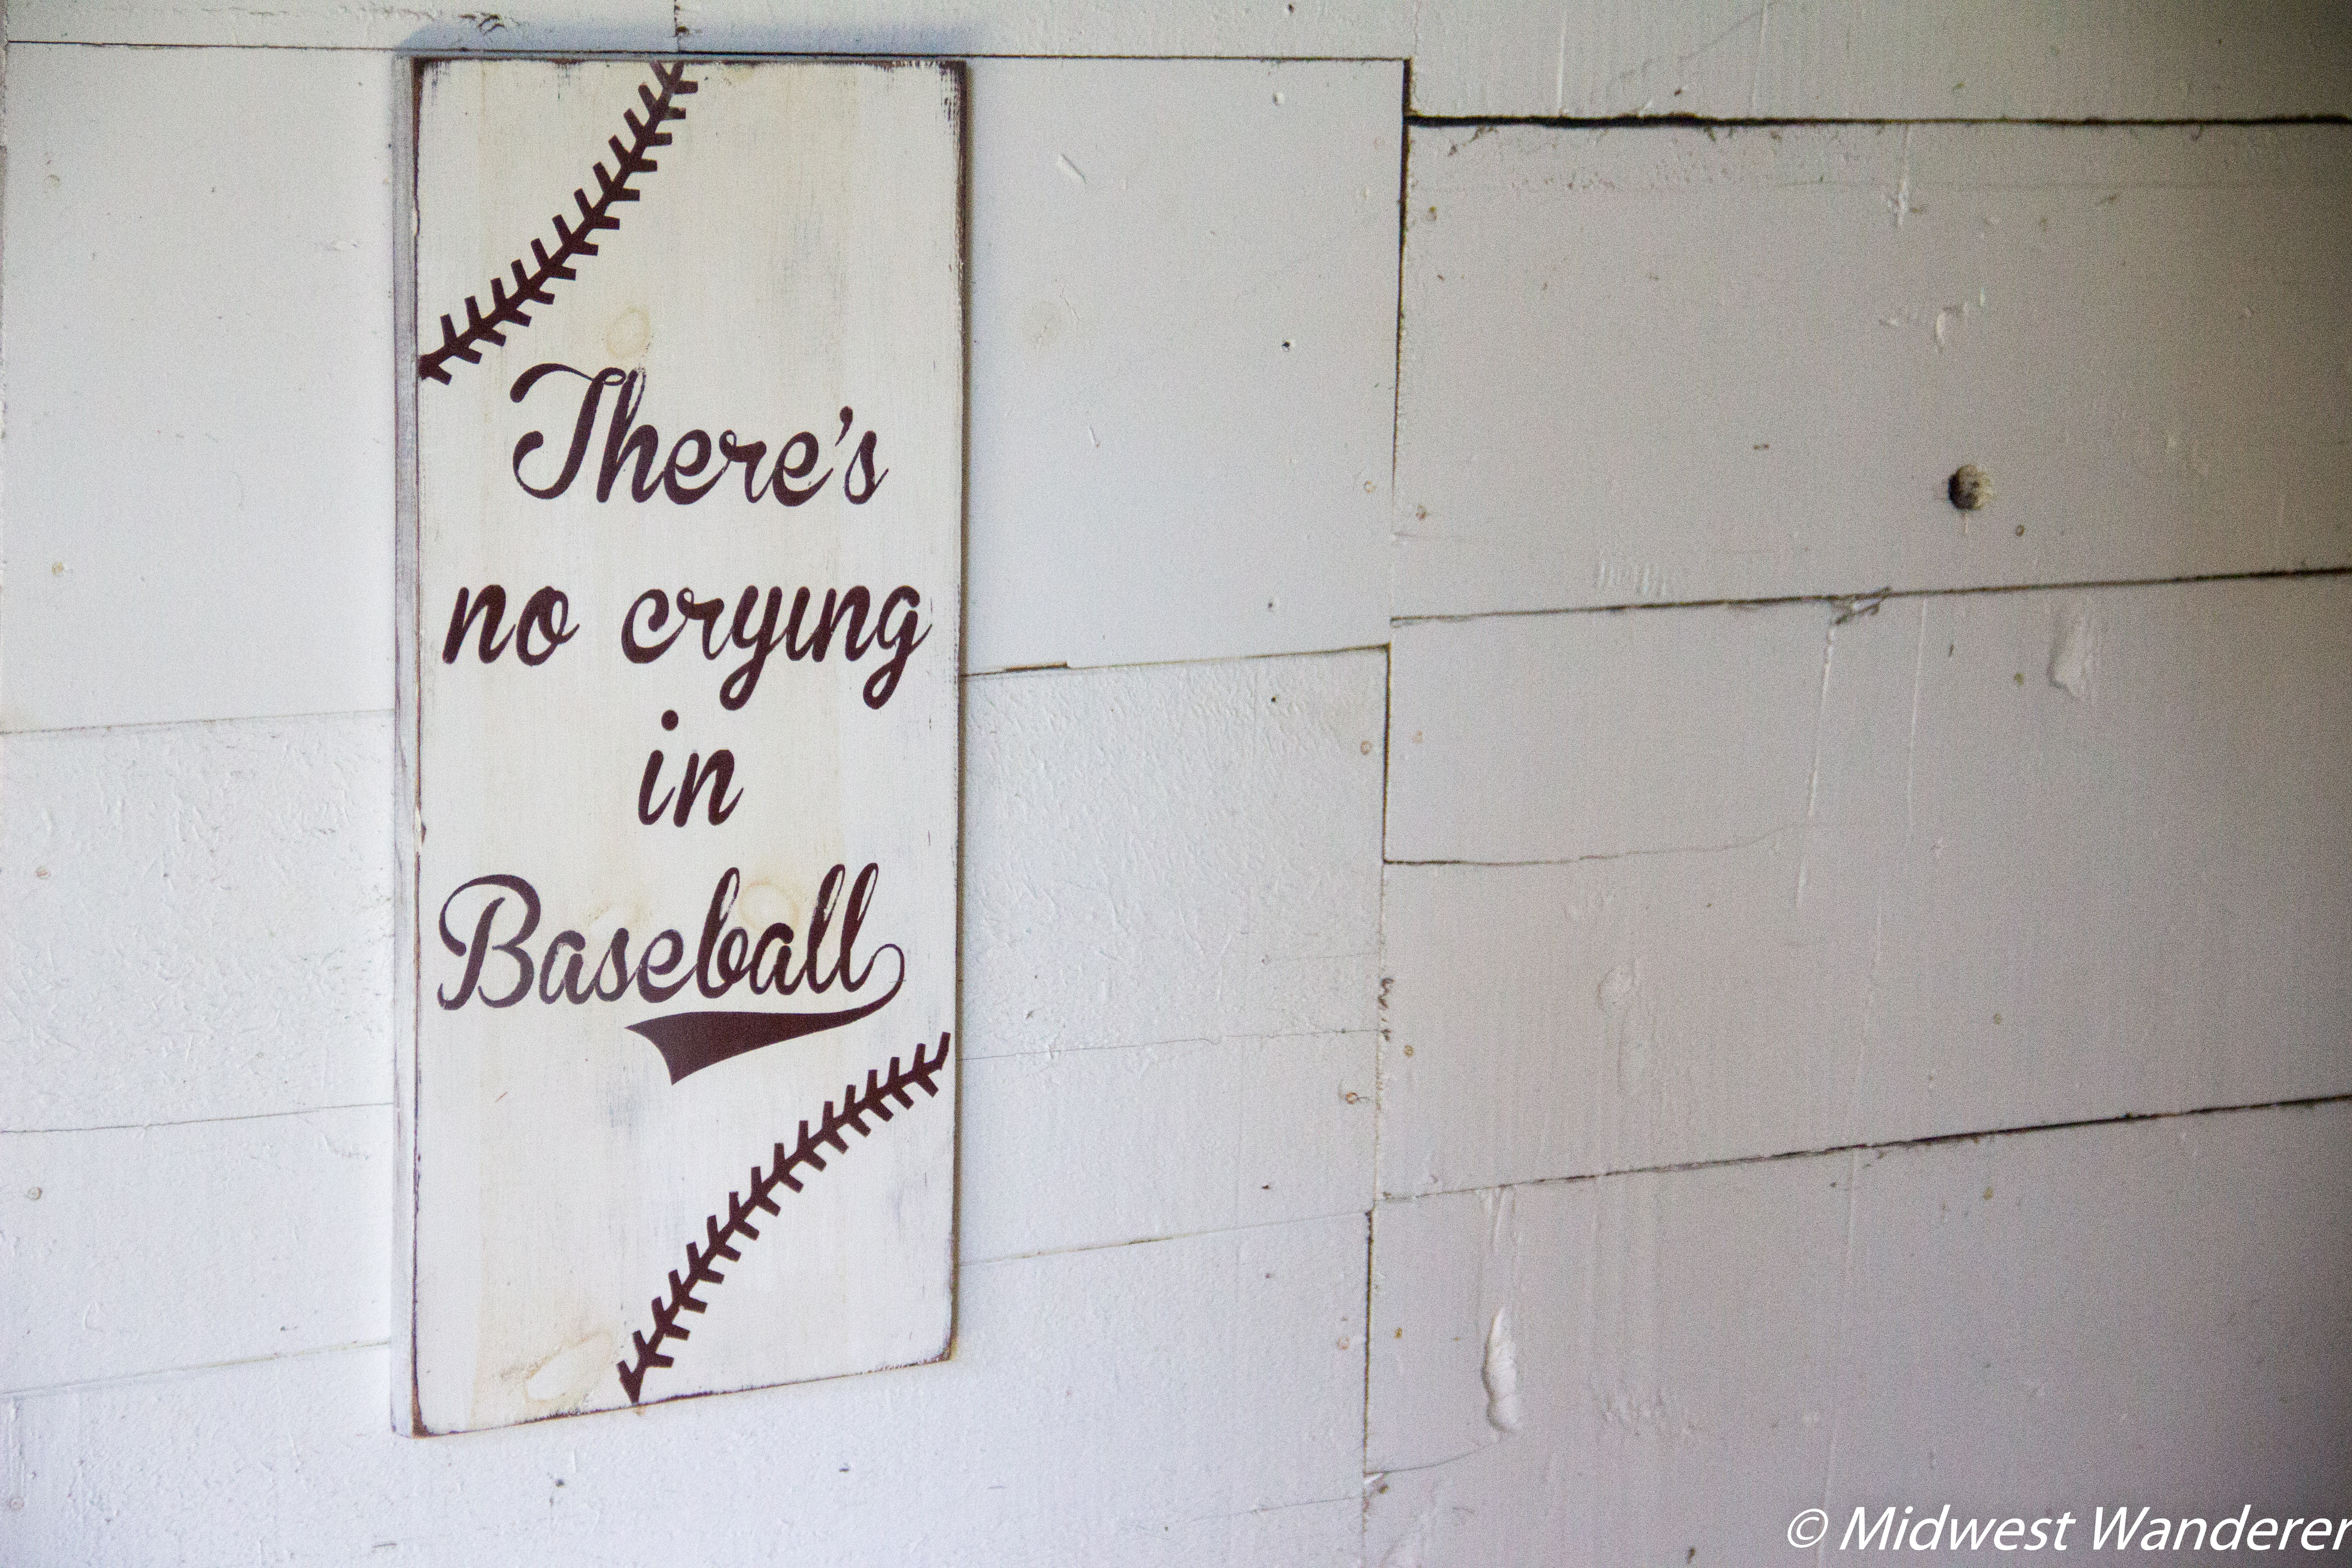 No crying in baseball